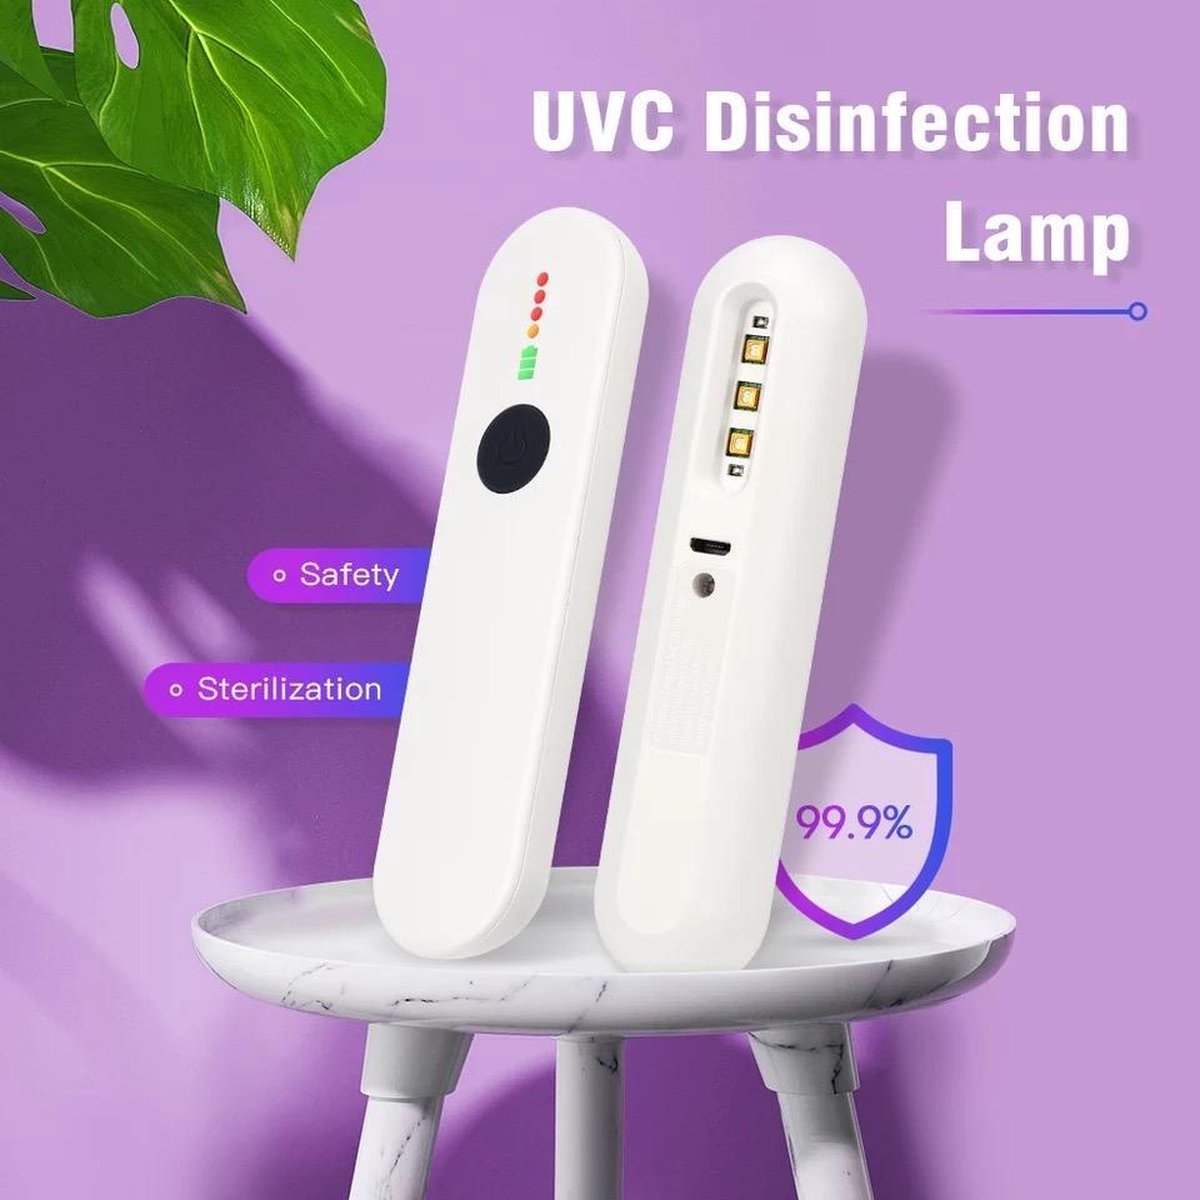 Desinfecterende UV C lamp - Desinfecteren uv - UV C desinfectielamp - UV C Sterilisatie lamp - UVC ontsmetting - UV C Sterilisator - Desinfectie lamp - Desinfecterend - Bacteriën en virussen - UV C lamp - Desinfectielamp - Huisstofmijt - UV C